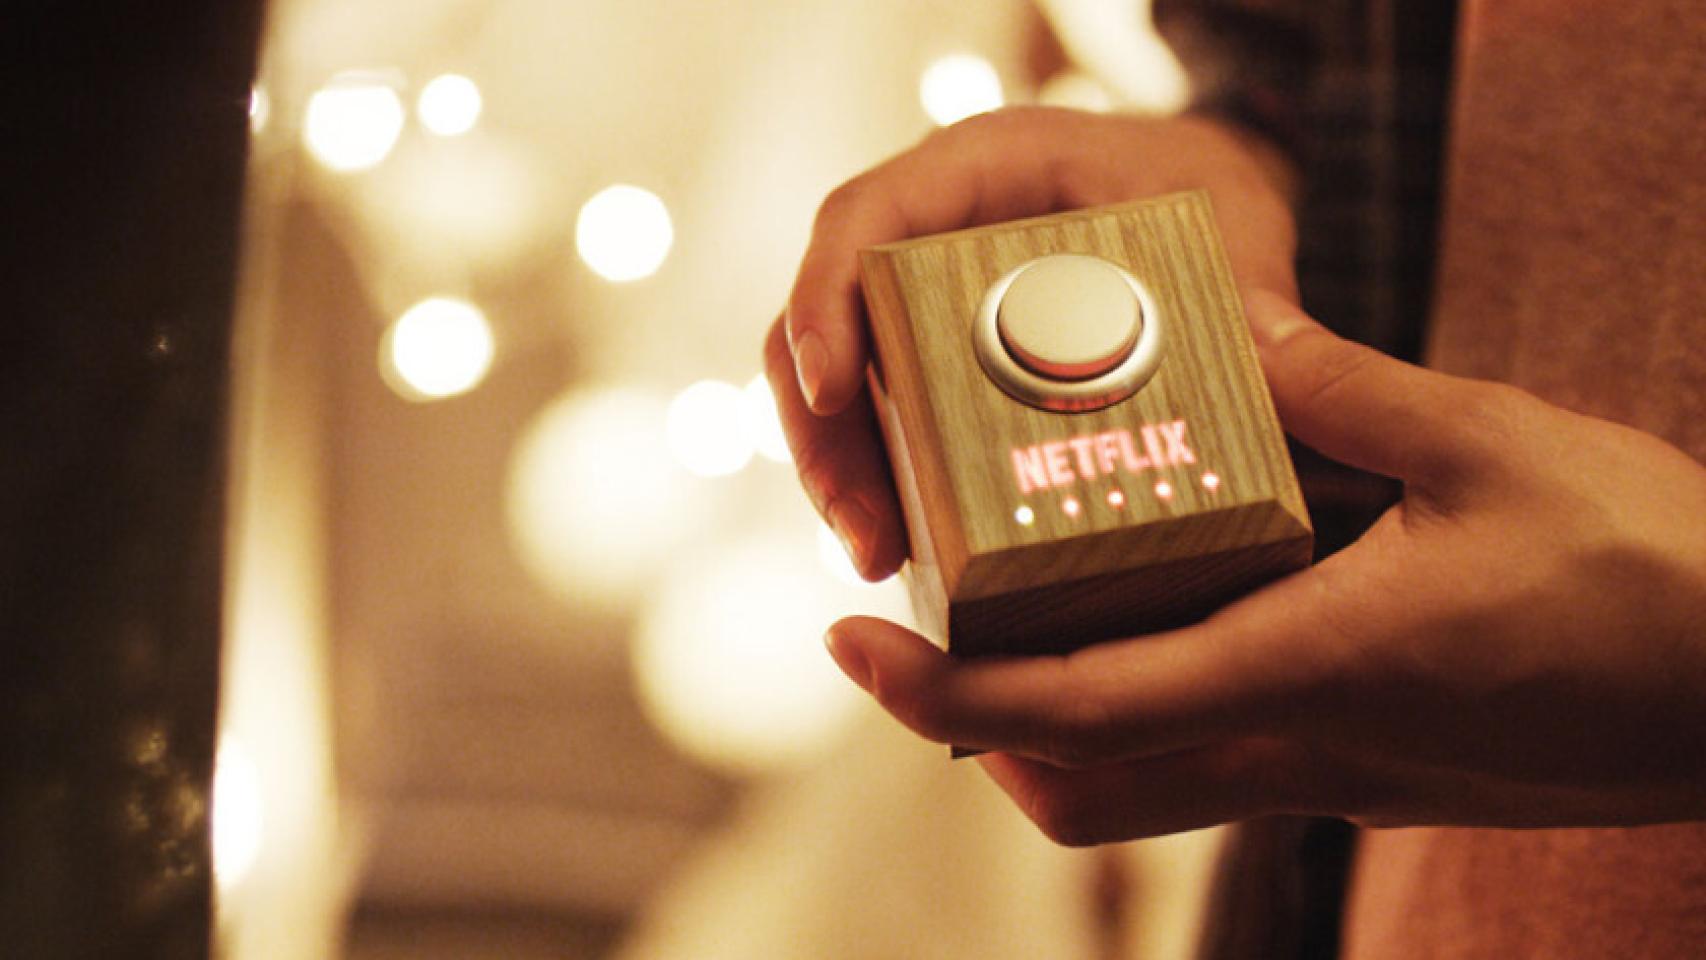 El botón Netflix: que el relax tome el mando